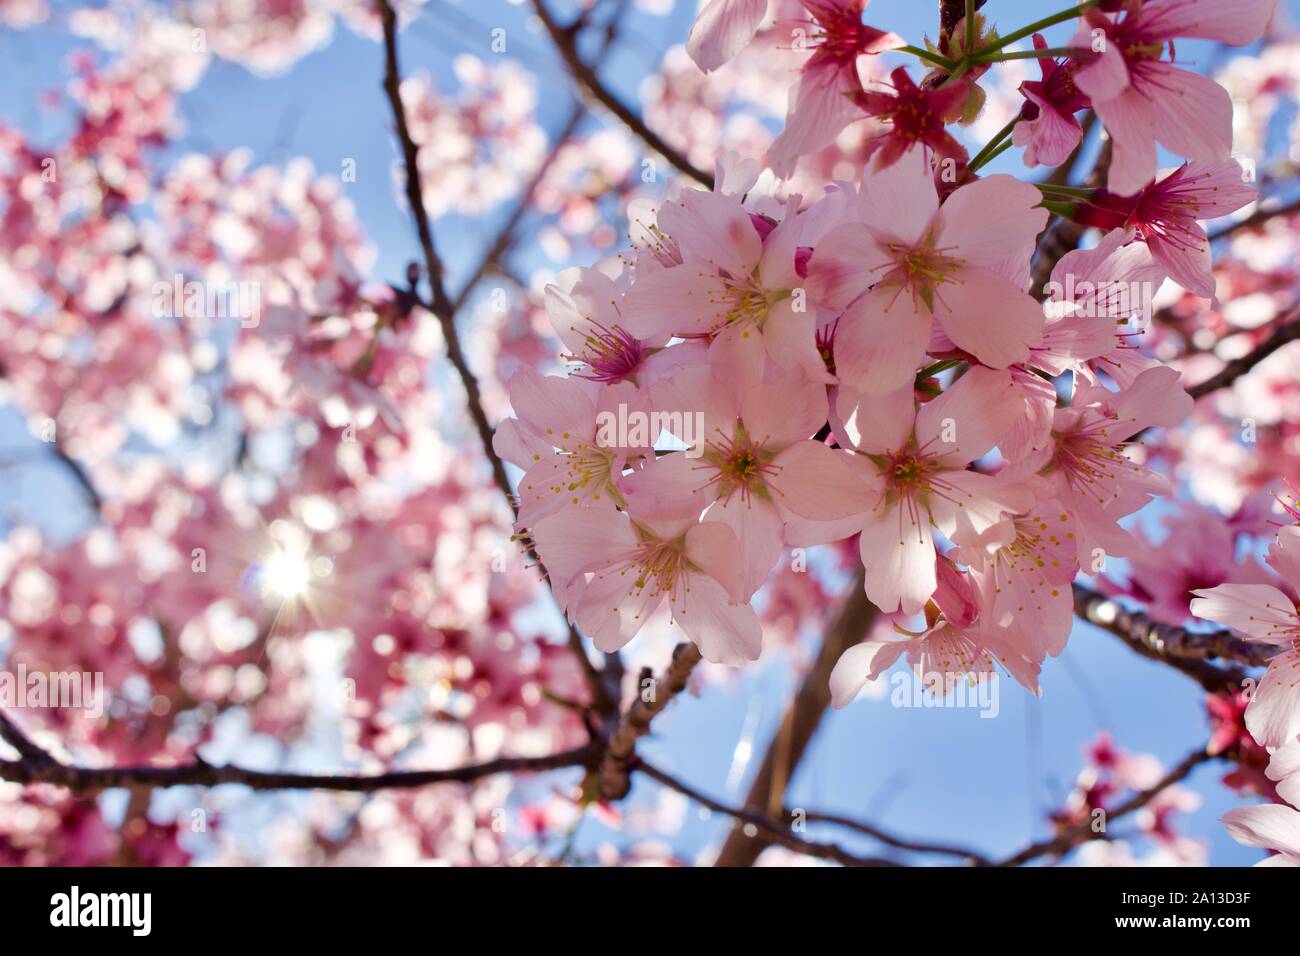 Spring in Japan Stock Photo